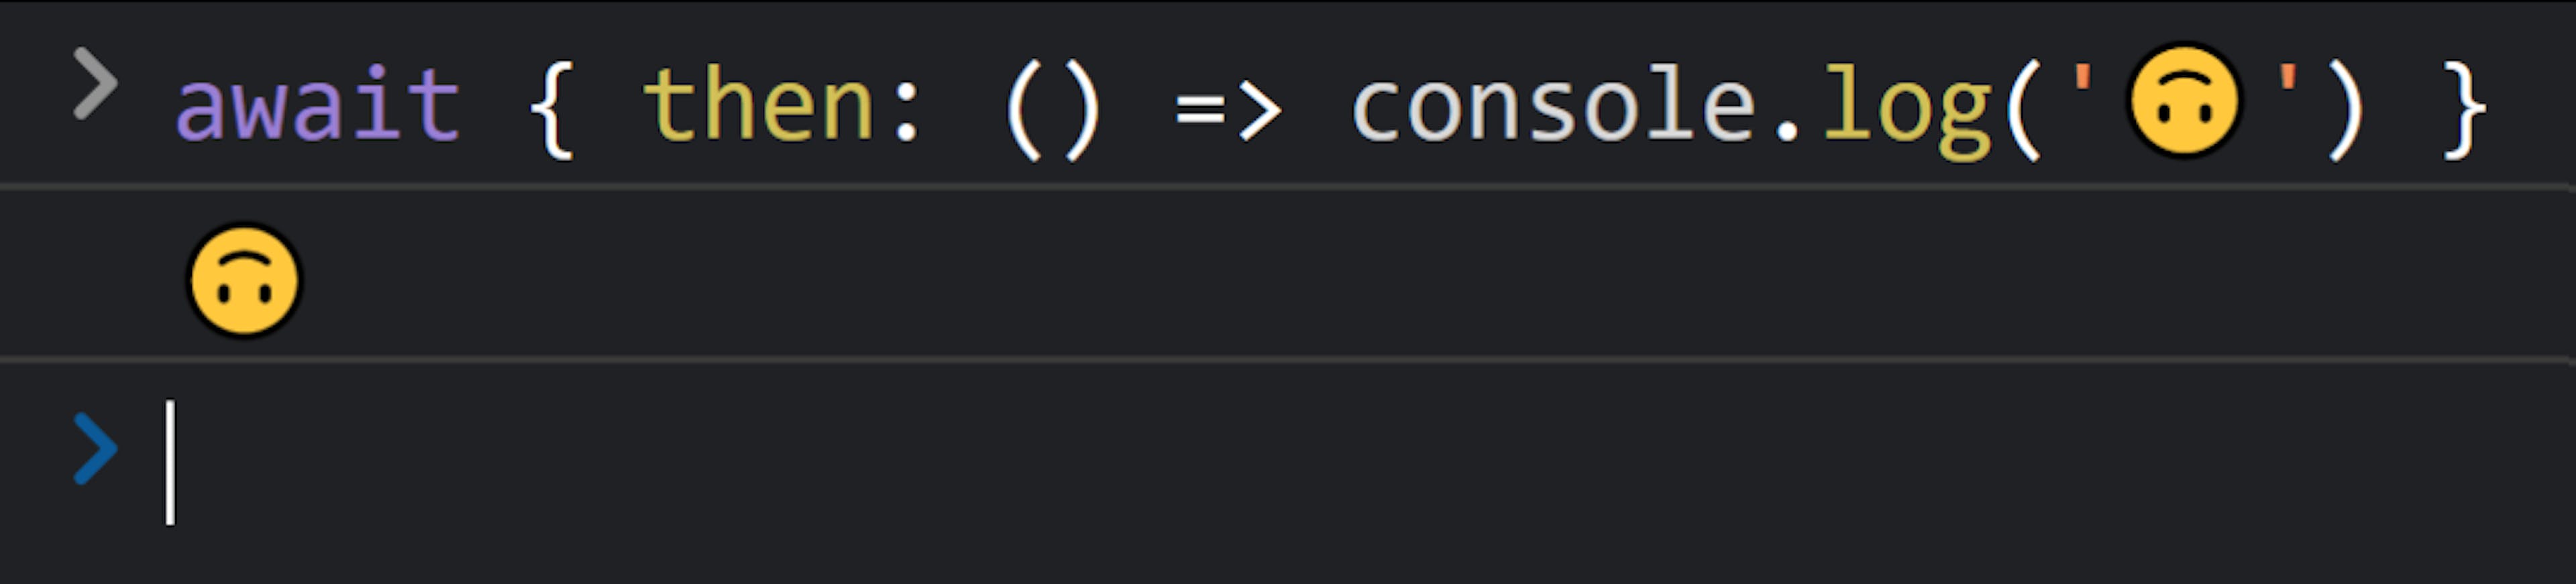 Console JavaScript avec le texte "wait { then: () => console.log('🙃') }" suivi de "🙃".